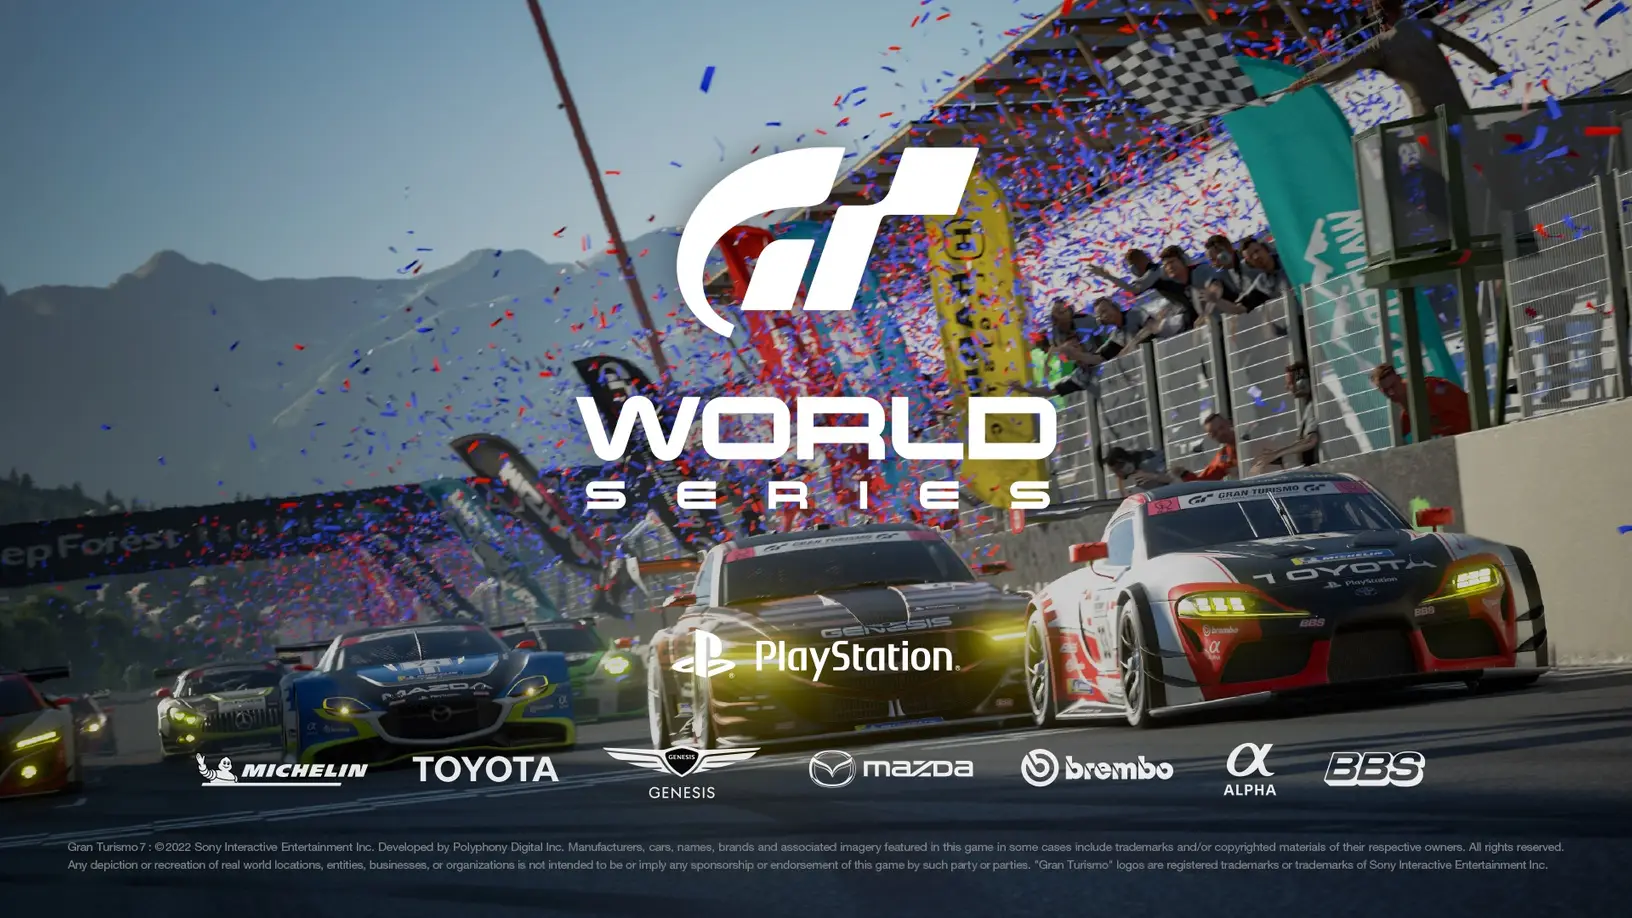 พบกับการแข่งขัน Gran Turismo World Series ในเกม Gran Turismo™ 7